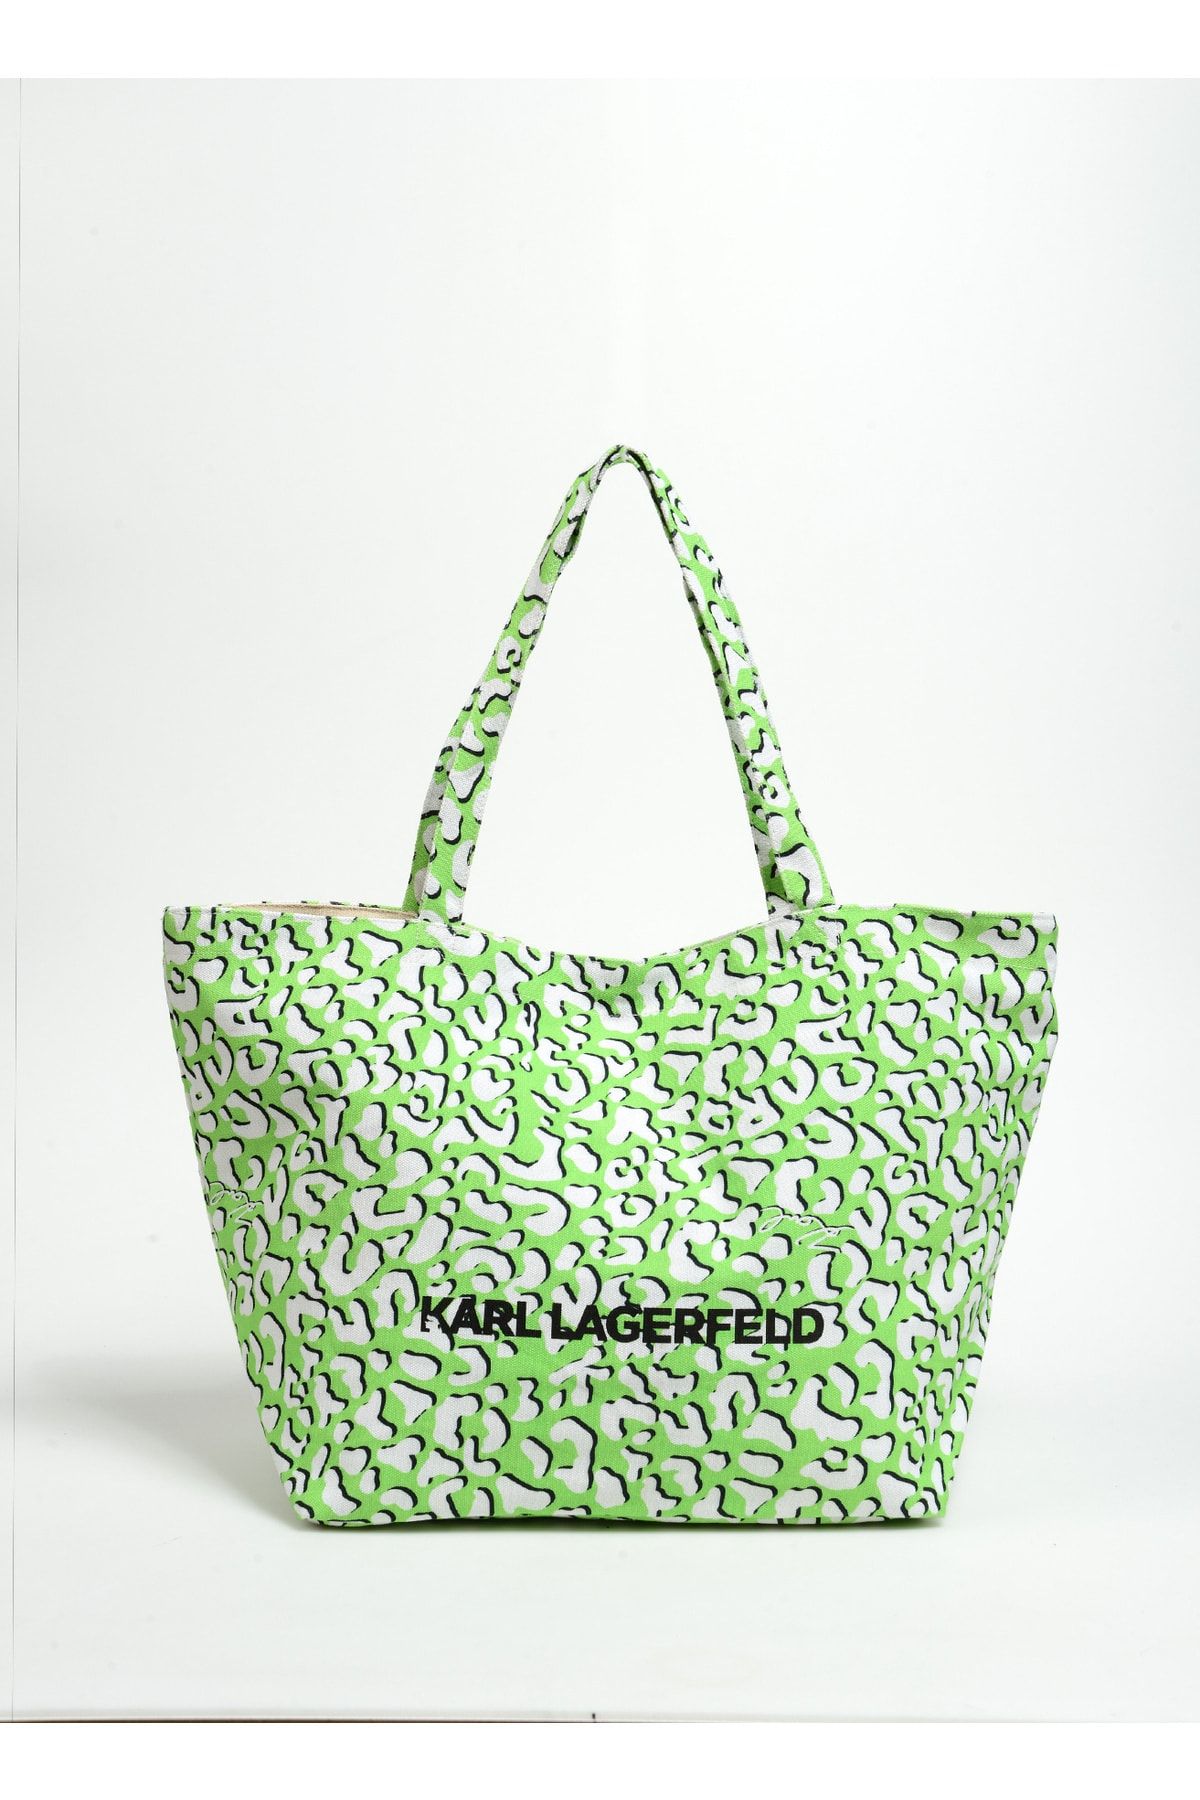 Karl Lagerfeld Yeşil Kadın El Çantası 231W3068600